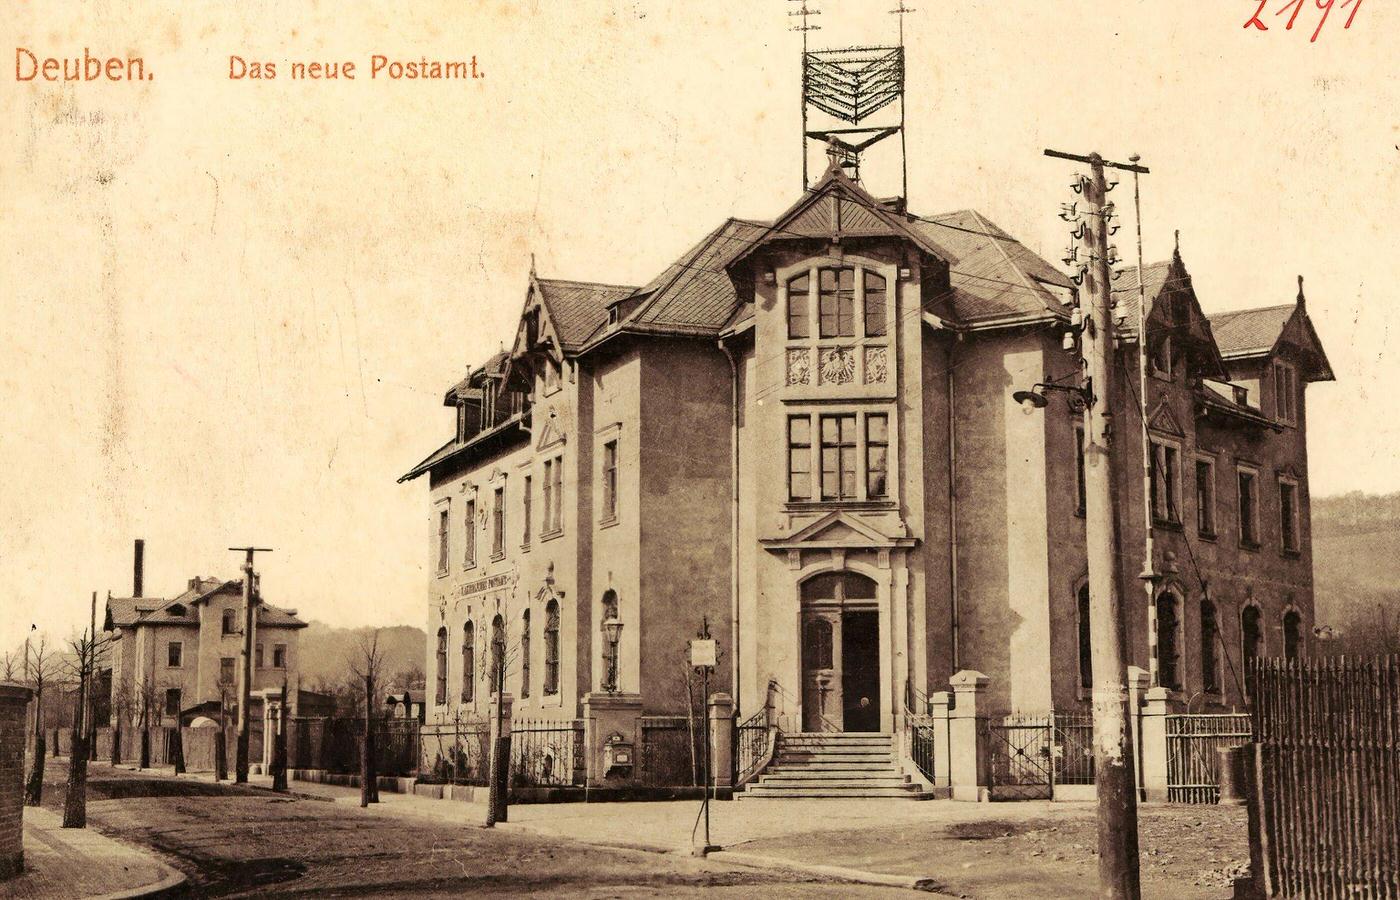 Post offices in Landkreis Sachsische Schweiz-Osterzgebirge, 1901